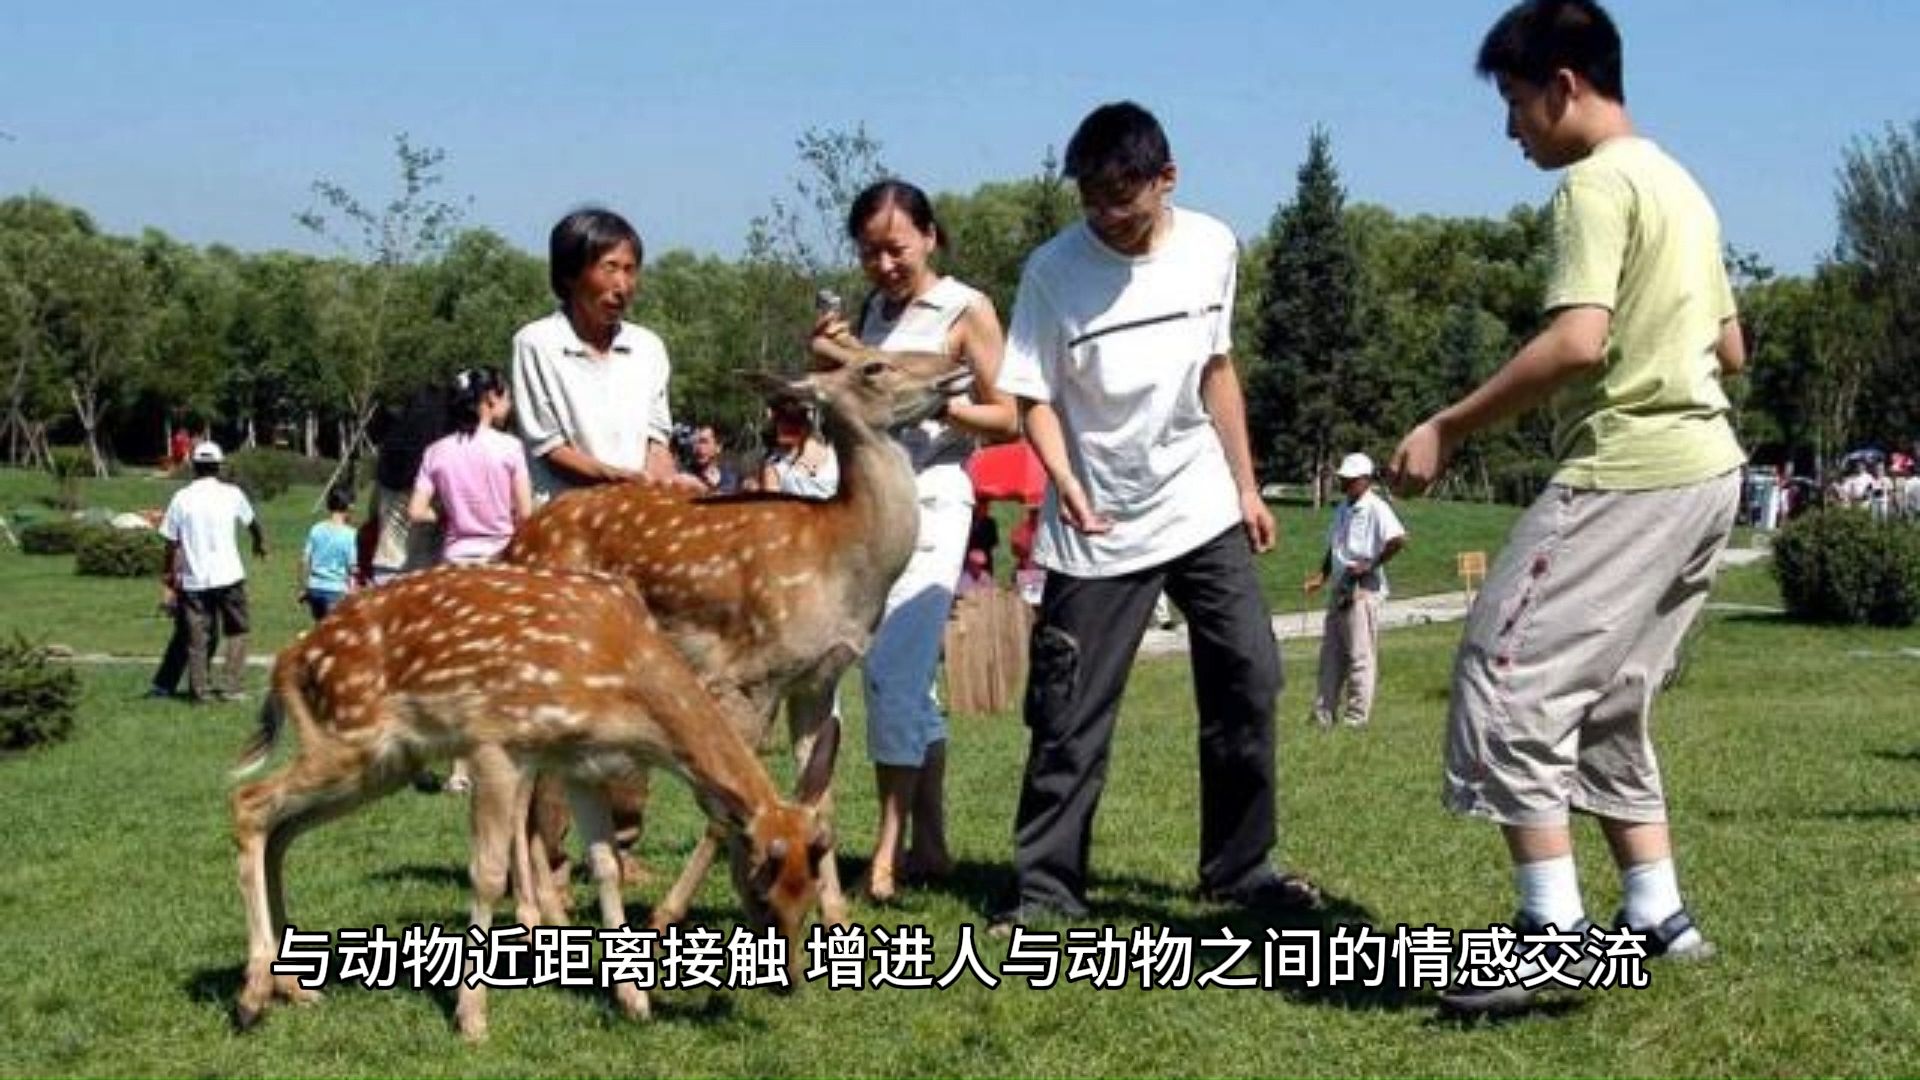 04野趣横生,上海野生动物园的奇妙邂逅